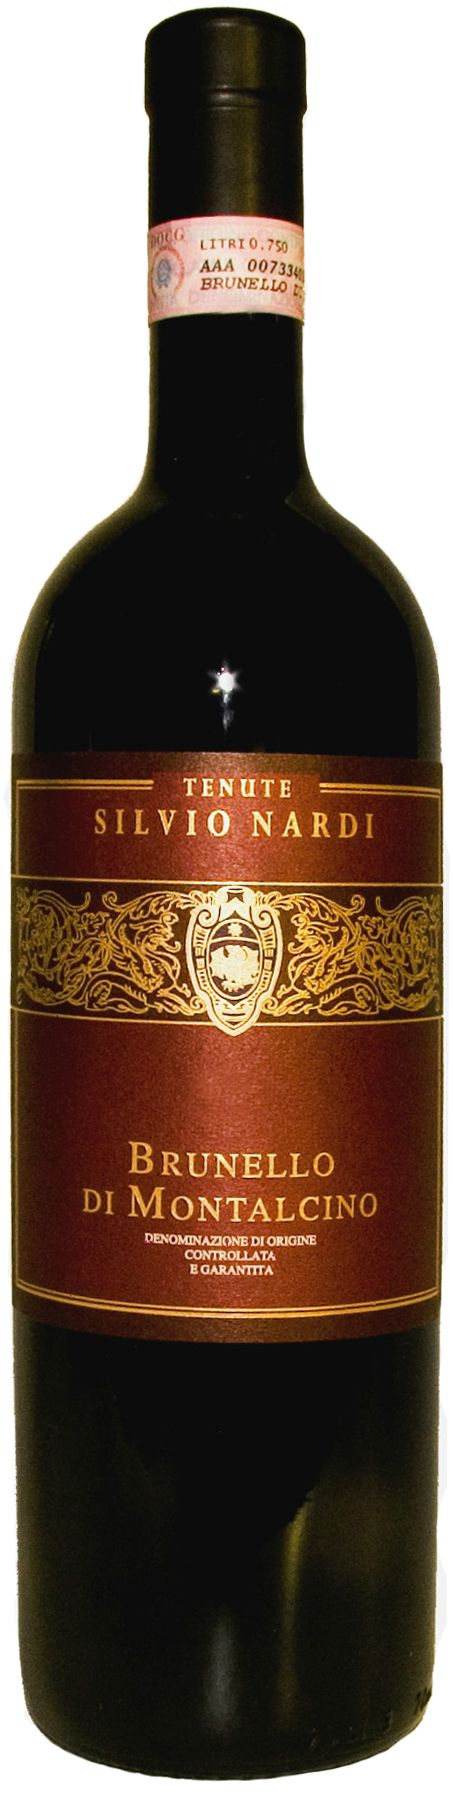 Tenute Silvio Nardi, Brunello Di Montalcino, 2006